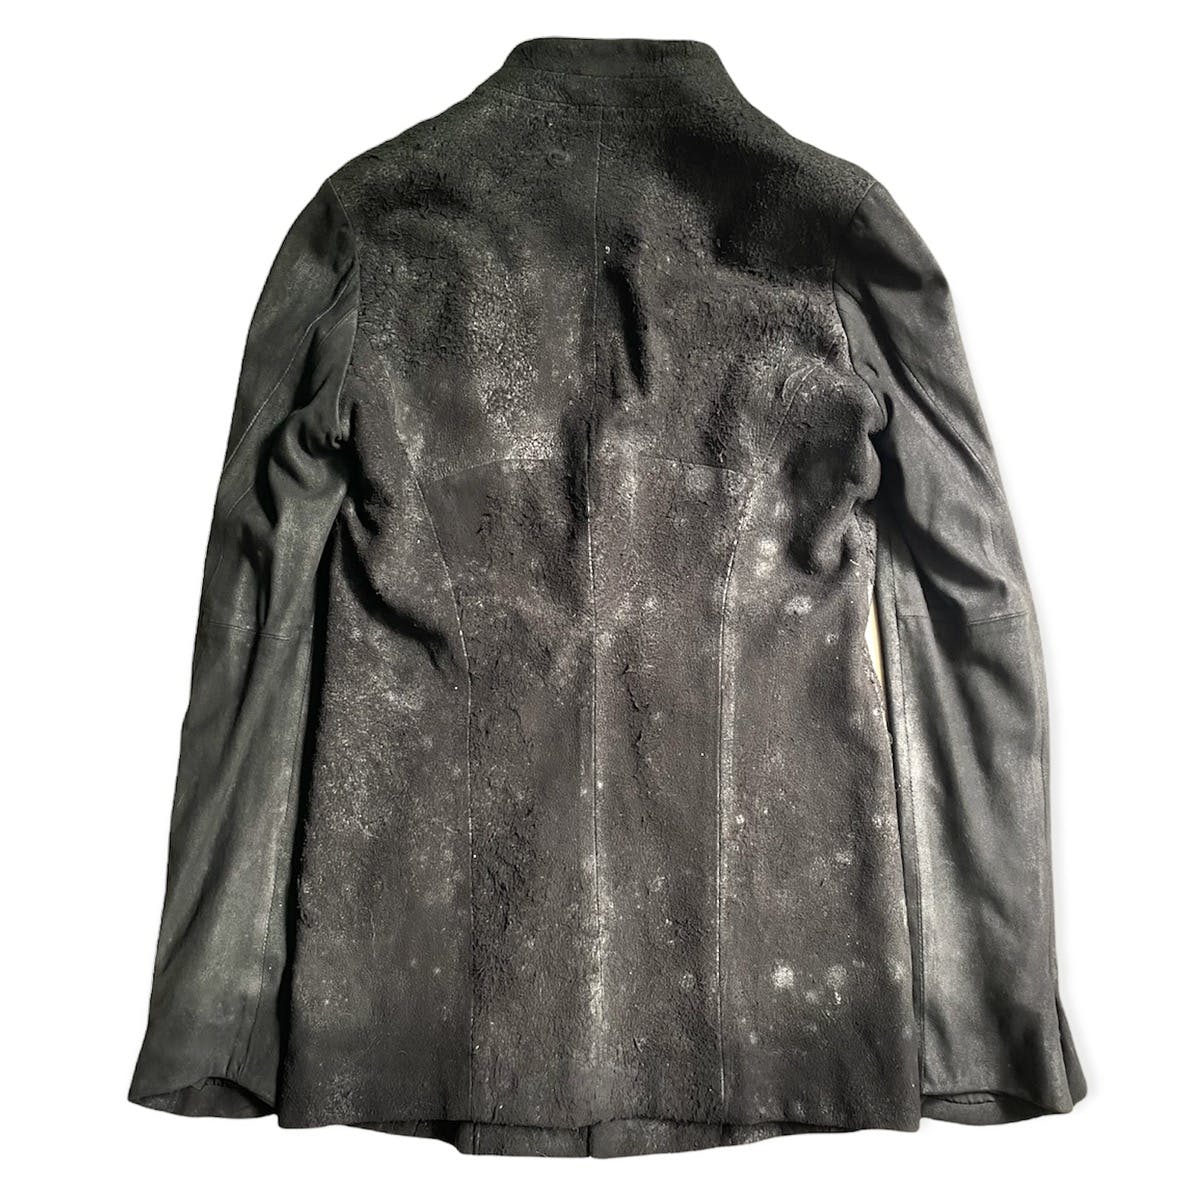 FW13-14 “Crack” Leather Jacket - 3